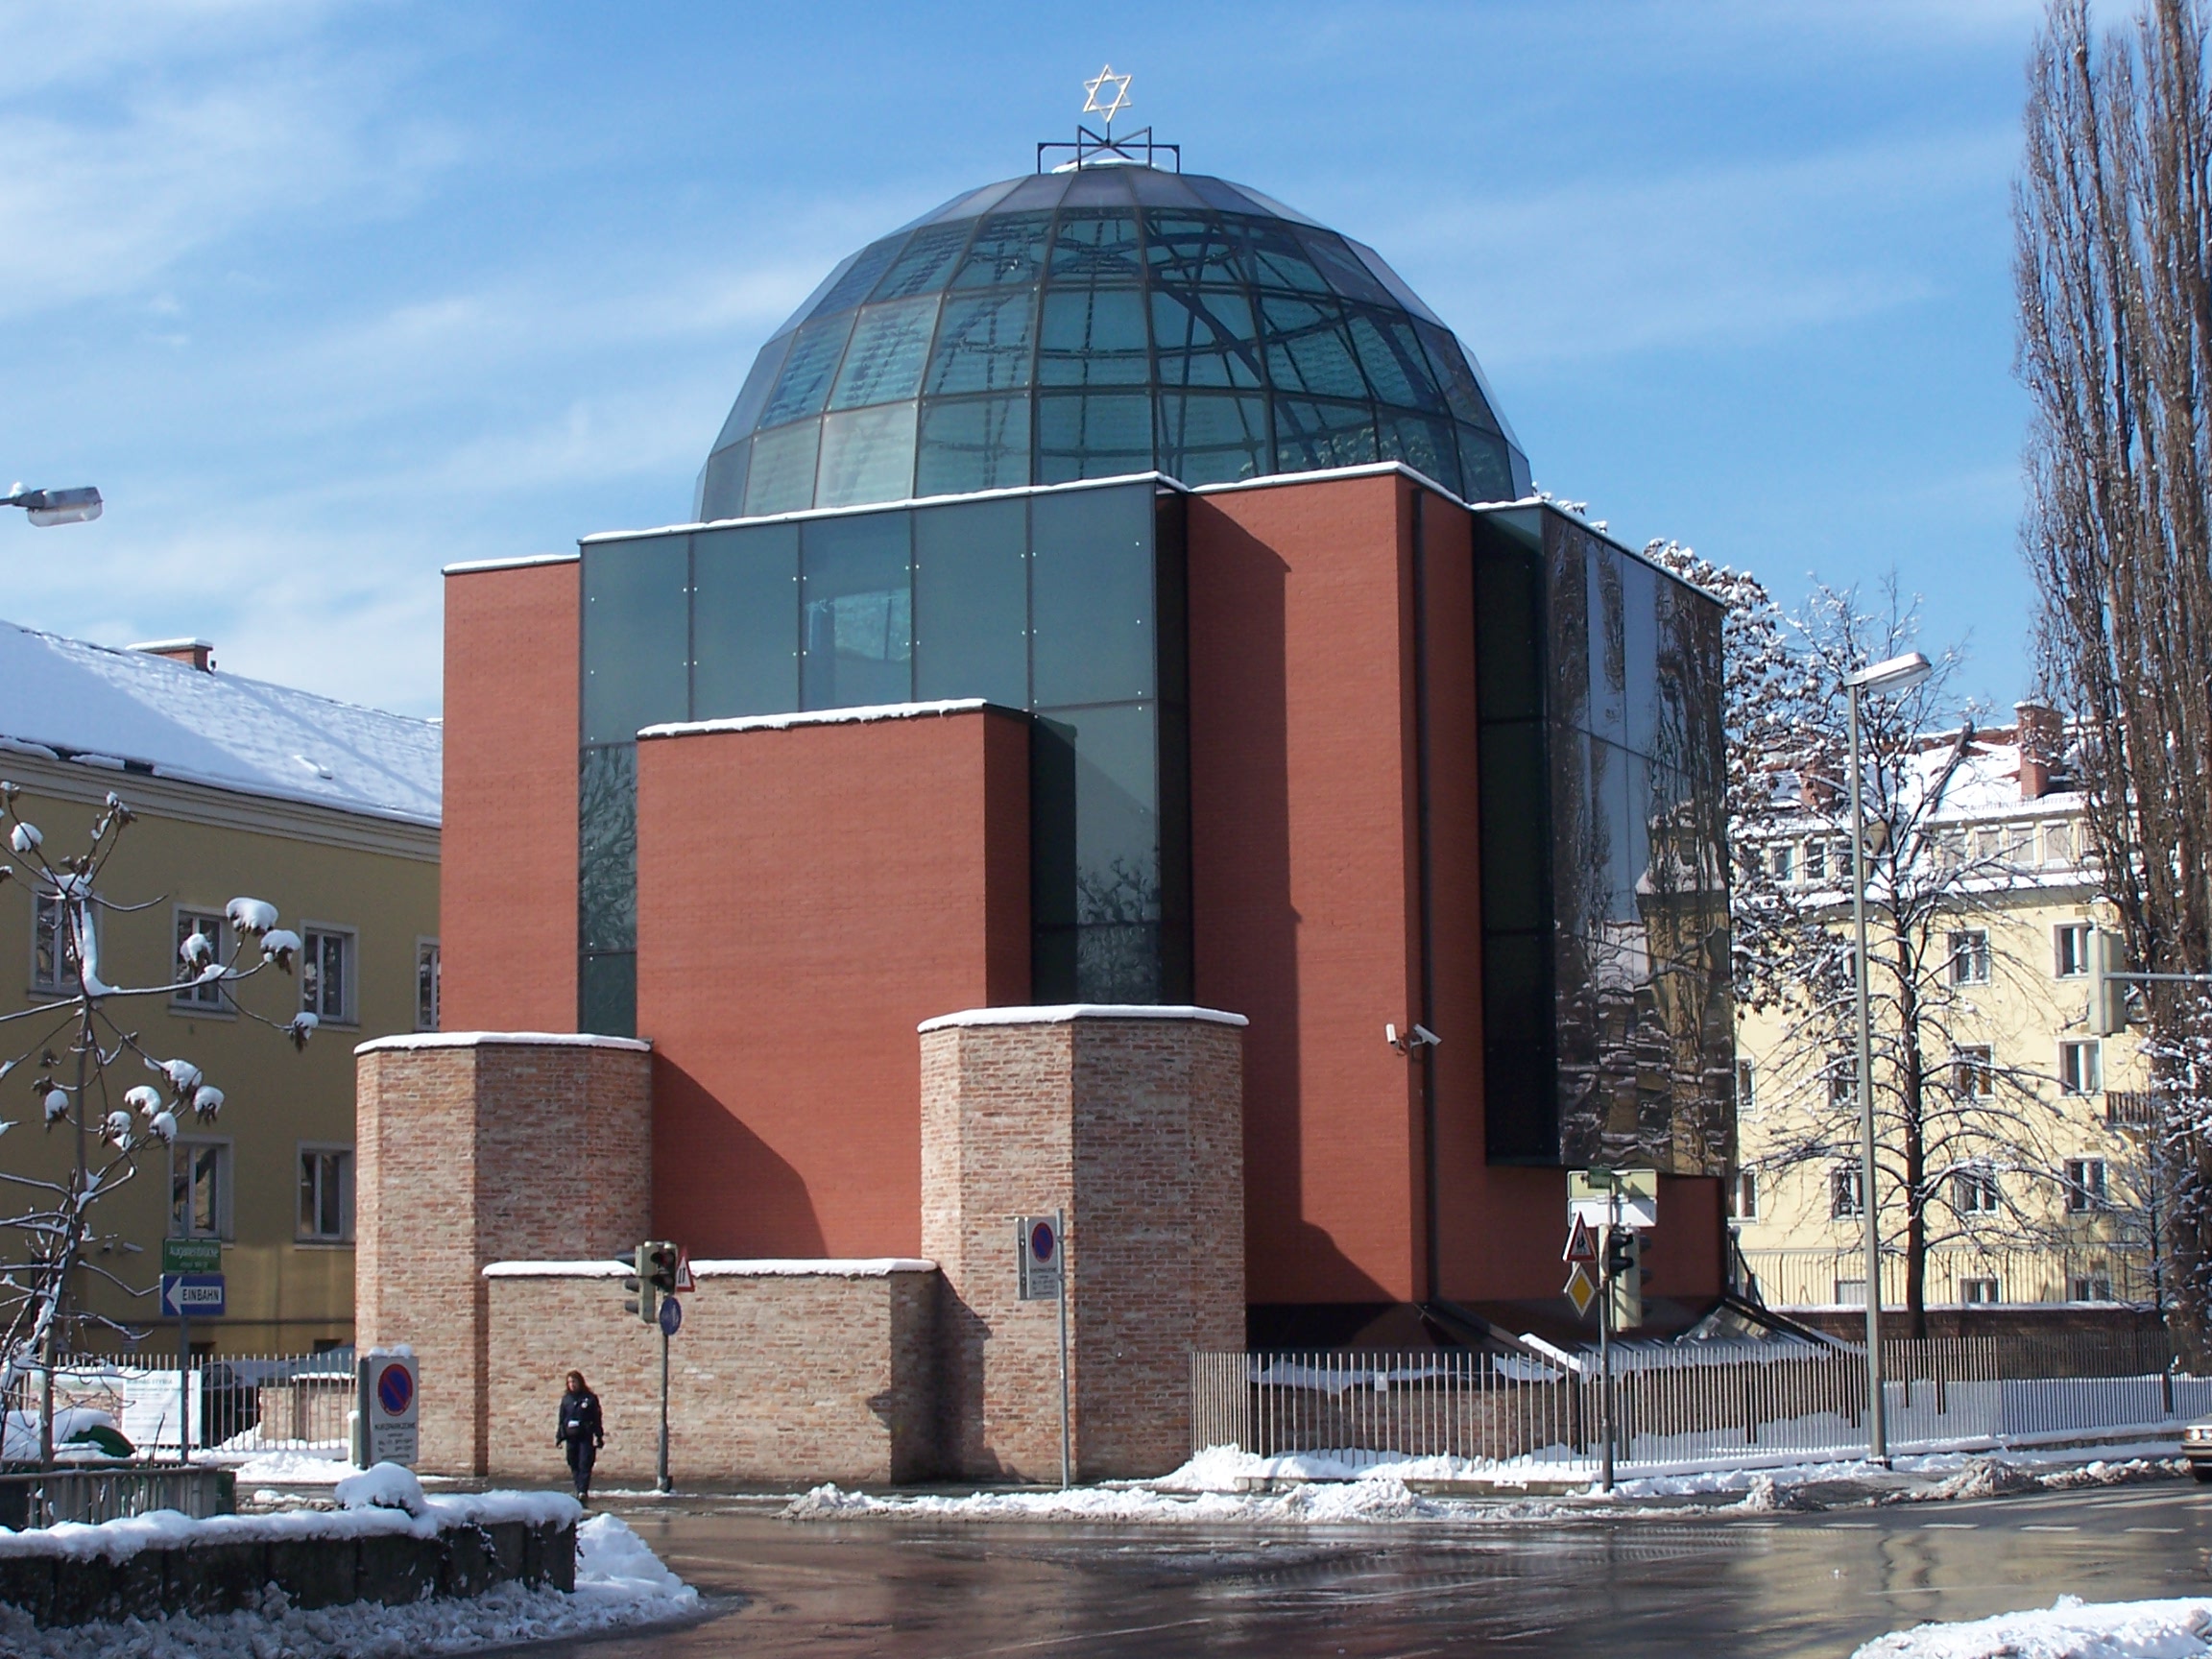 Die neue Synagoge wurde am 9. November 2000 eröffnet Foto: Willard, Wikimedia Commons